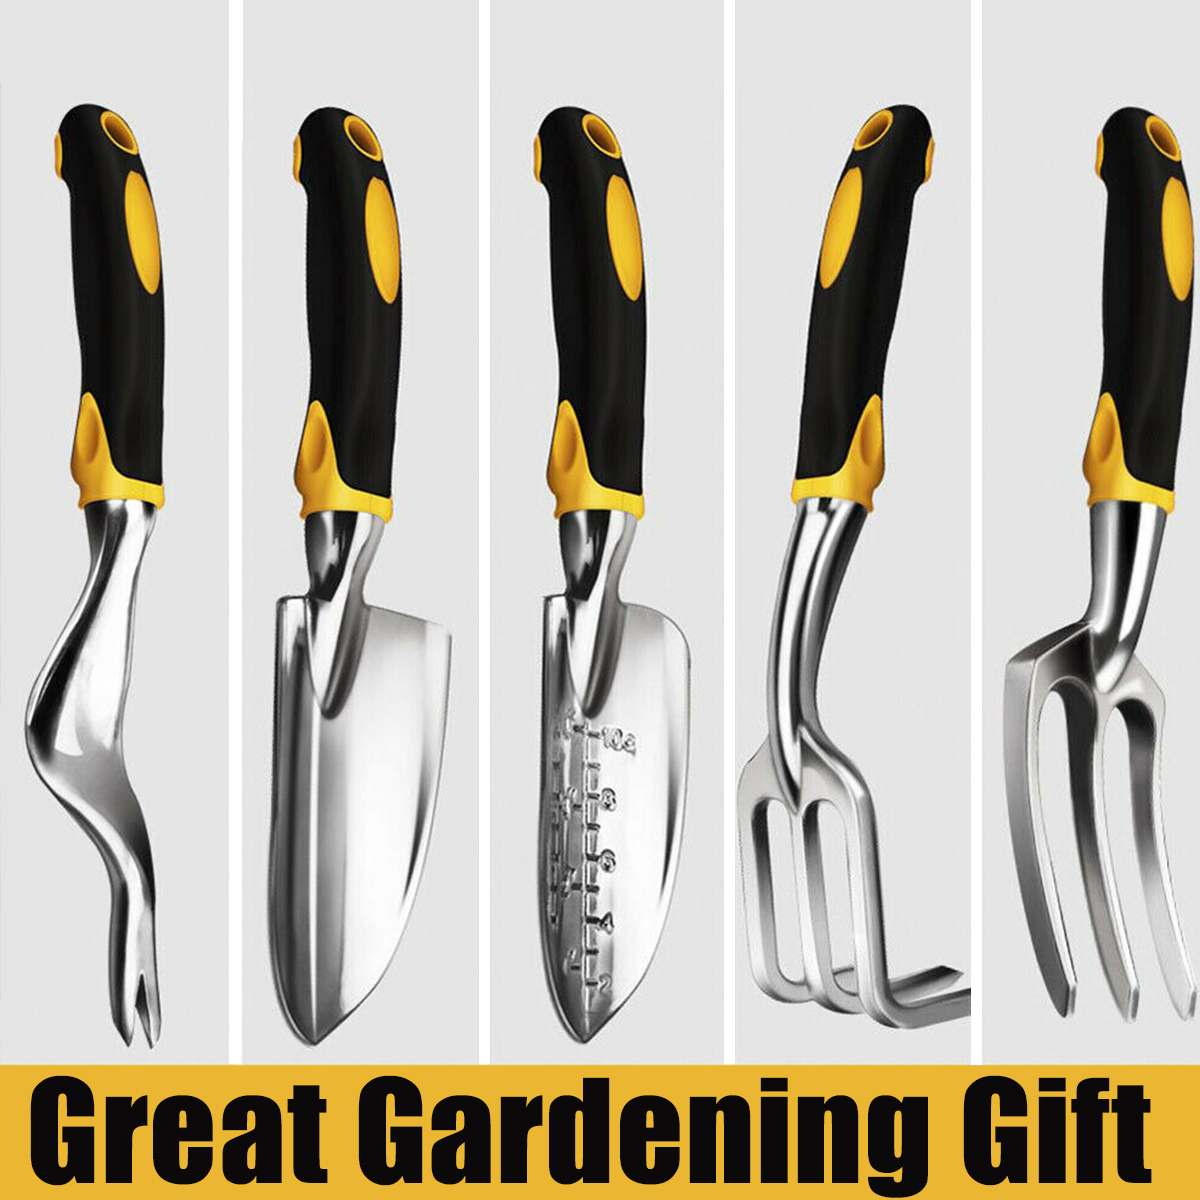 Garden Tool Set 5/9 Pcs /set Multi-Functional Garden Kit Practical/Trowel/Rake/Shovel/Fork/Scissors/Gloves/Tool Bag Included